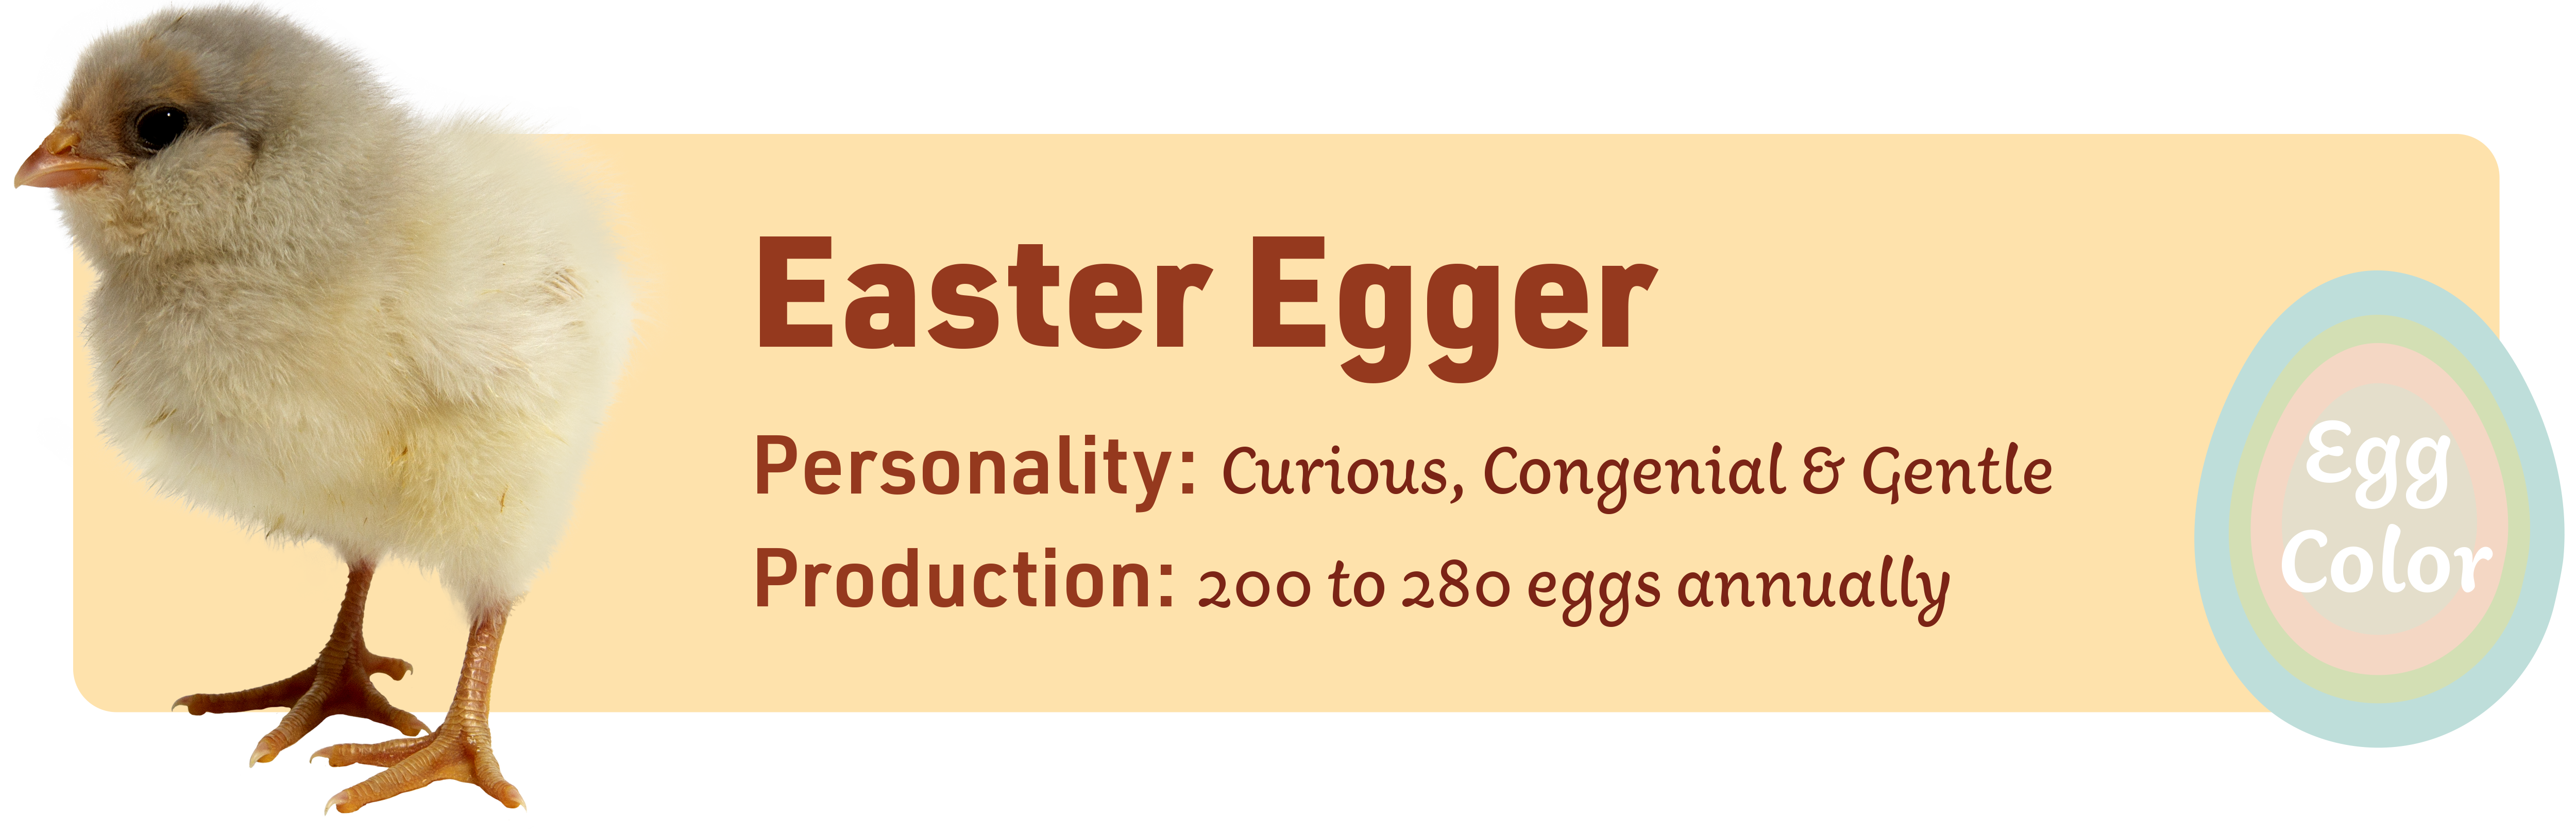 Easter_Egger_Popular_chicks_v1-3